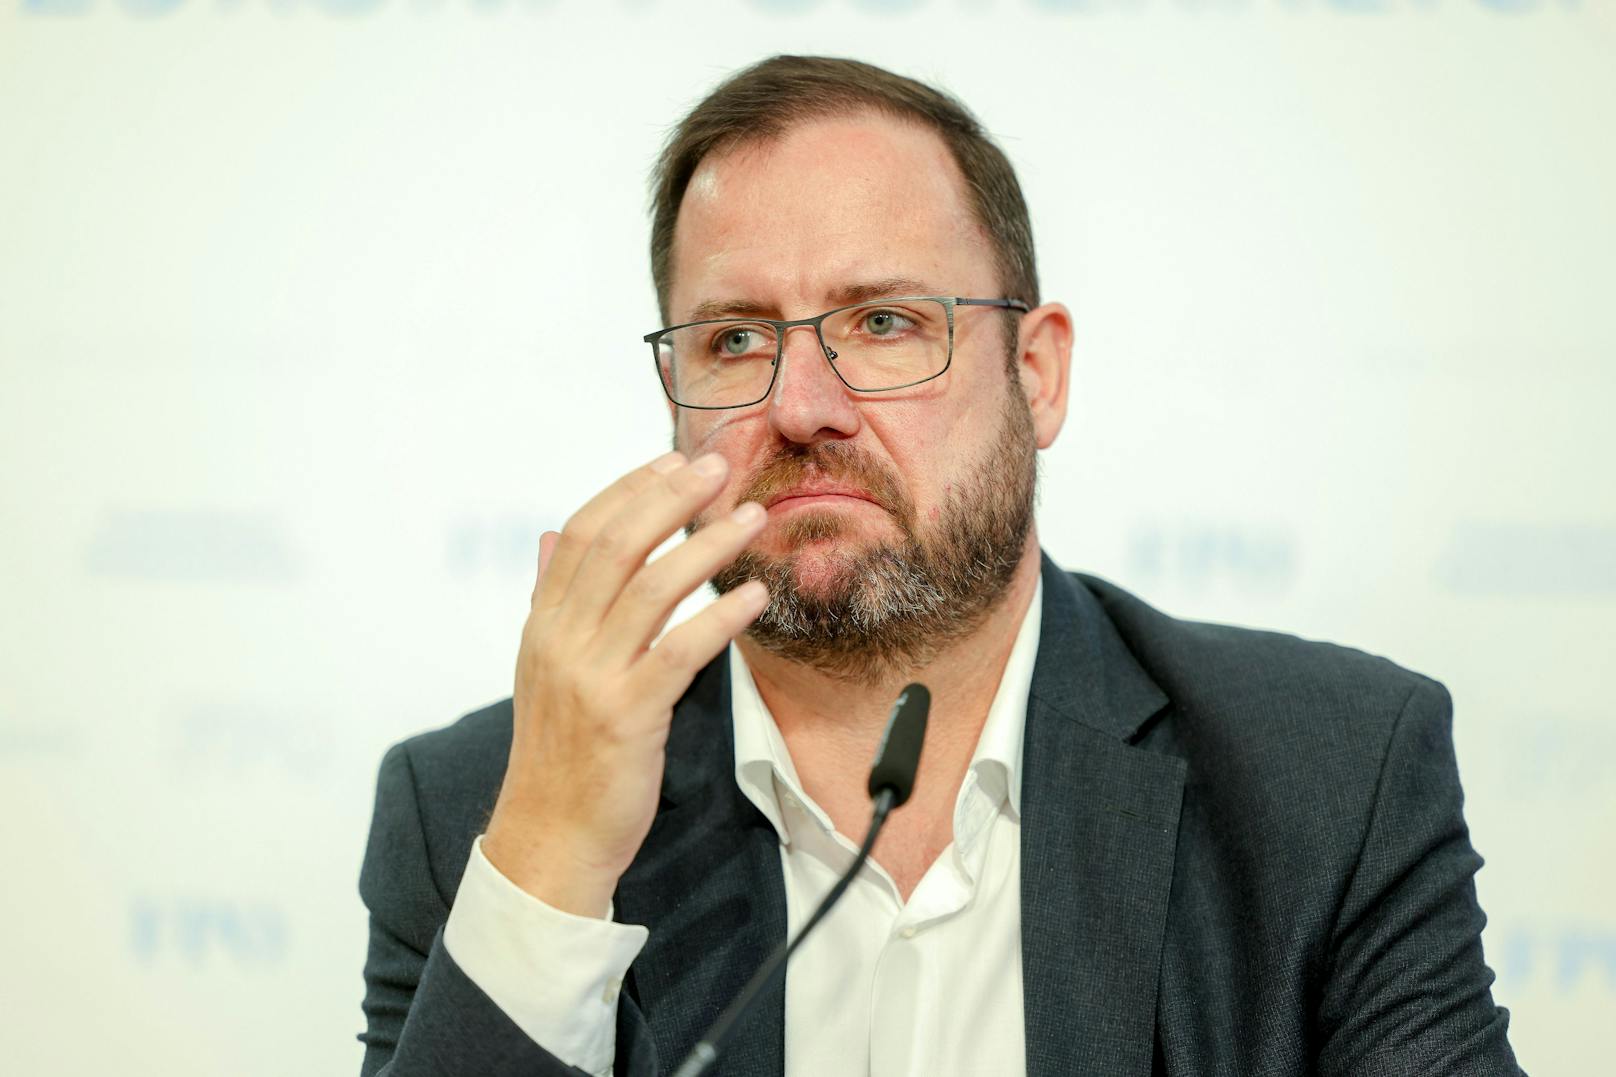 FPÖ-Mediensprecher Christian Hafenecker empfindet das Vorgehen der ÖVP als "realitätsfremd".